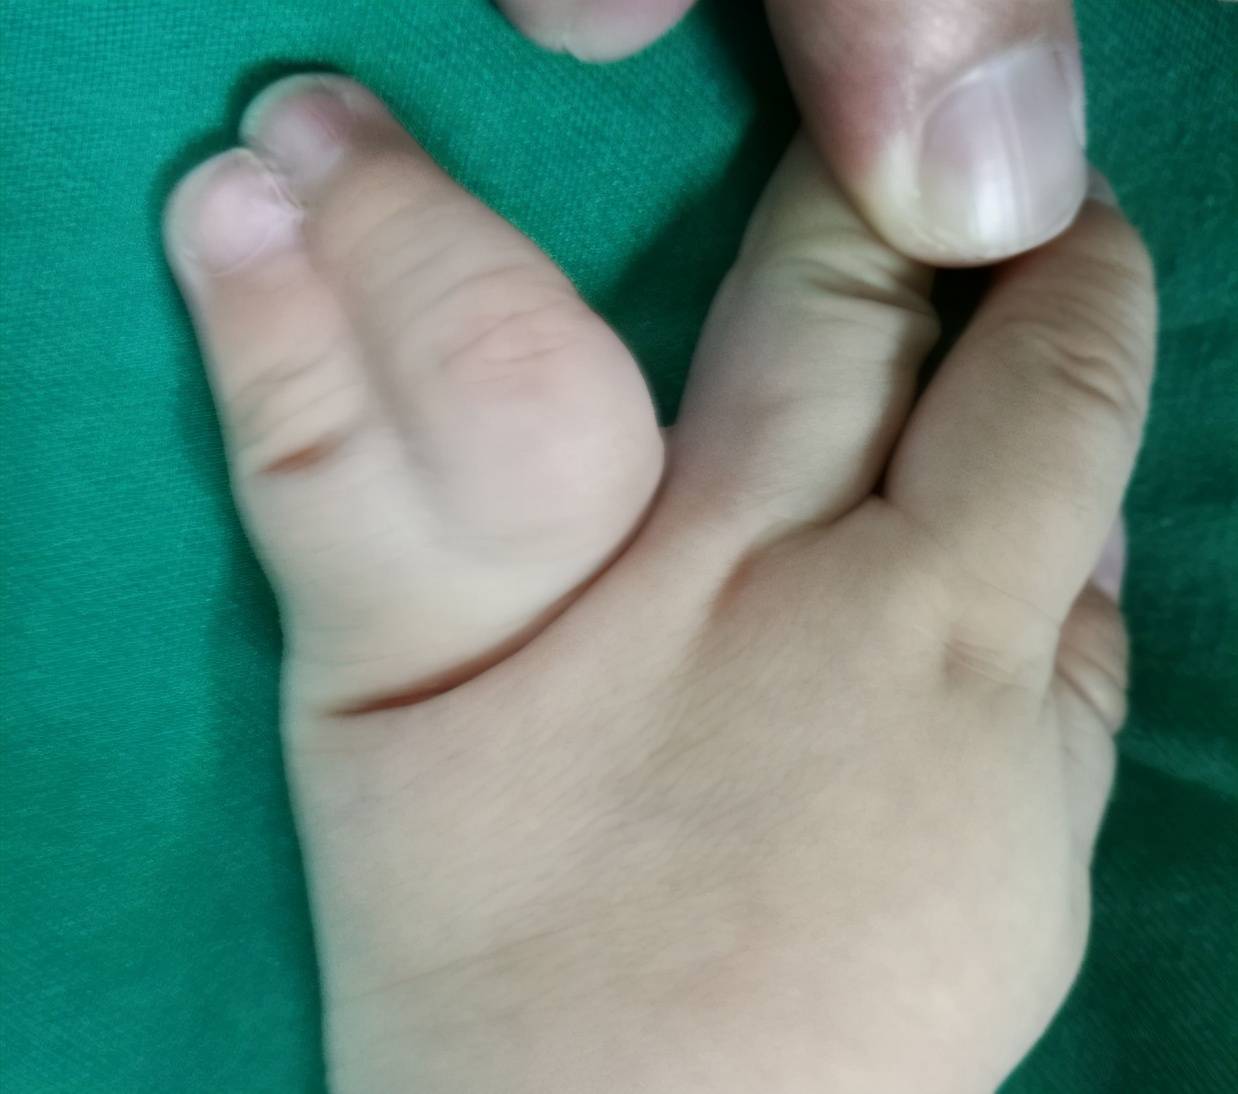 这是一个双手并指的孩子,两只手都是环指和小指并指,由于环指比小指长